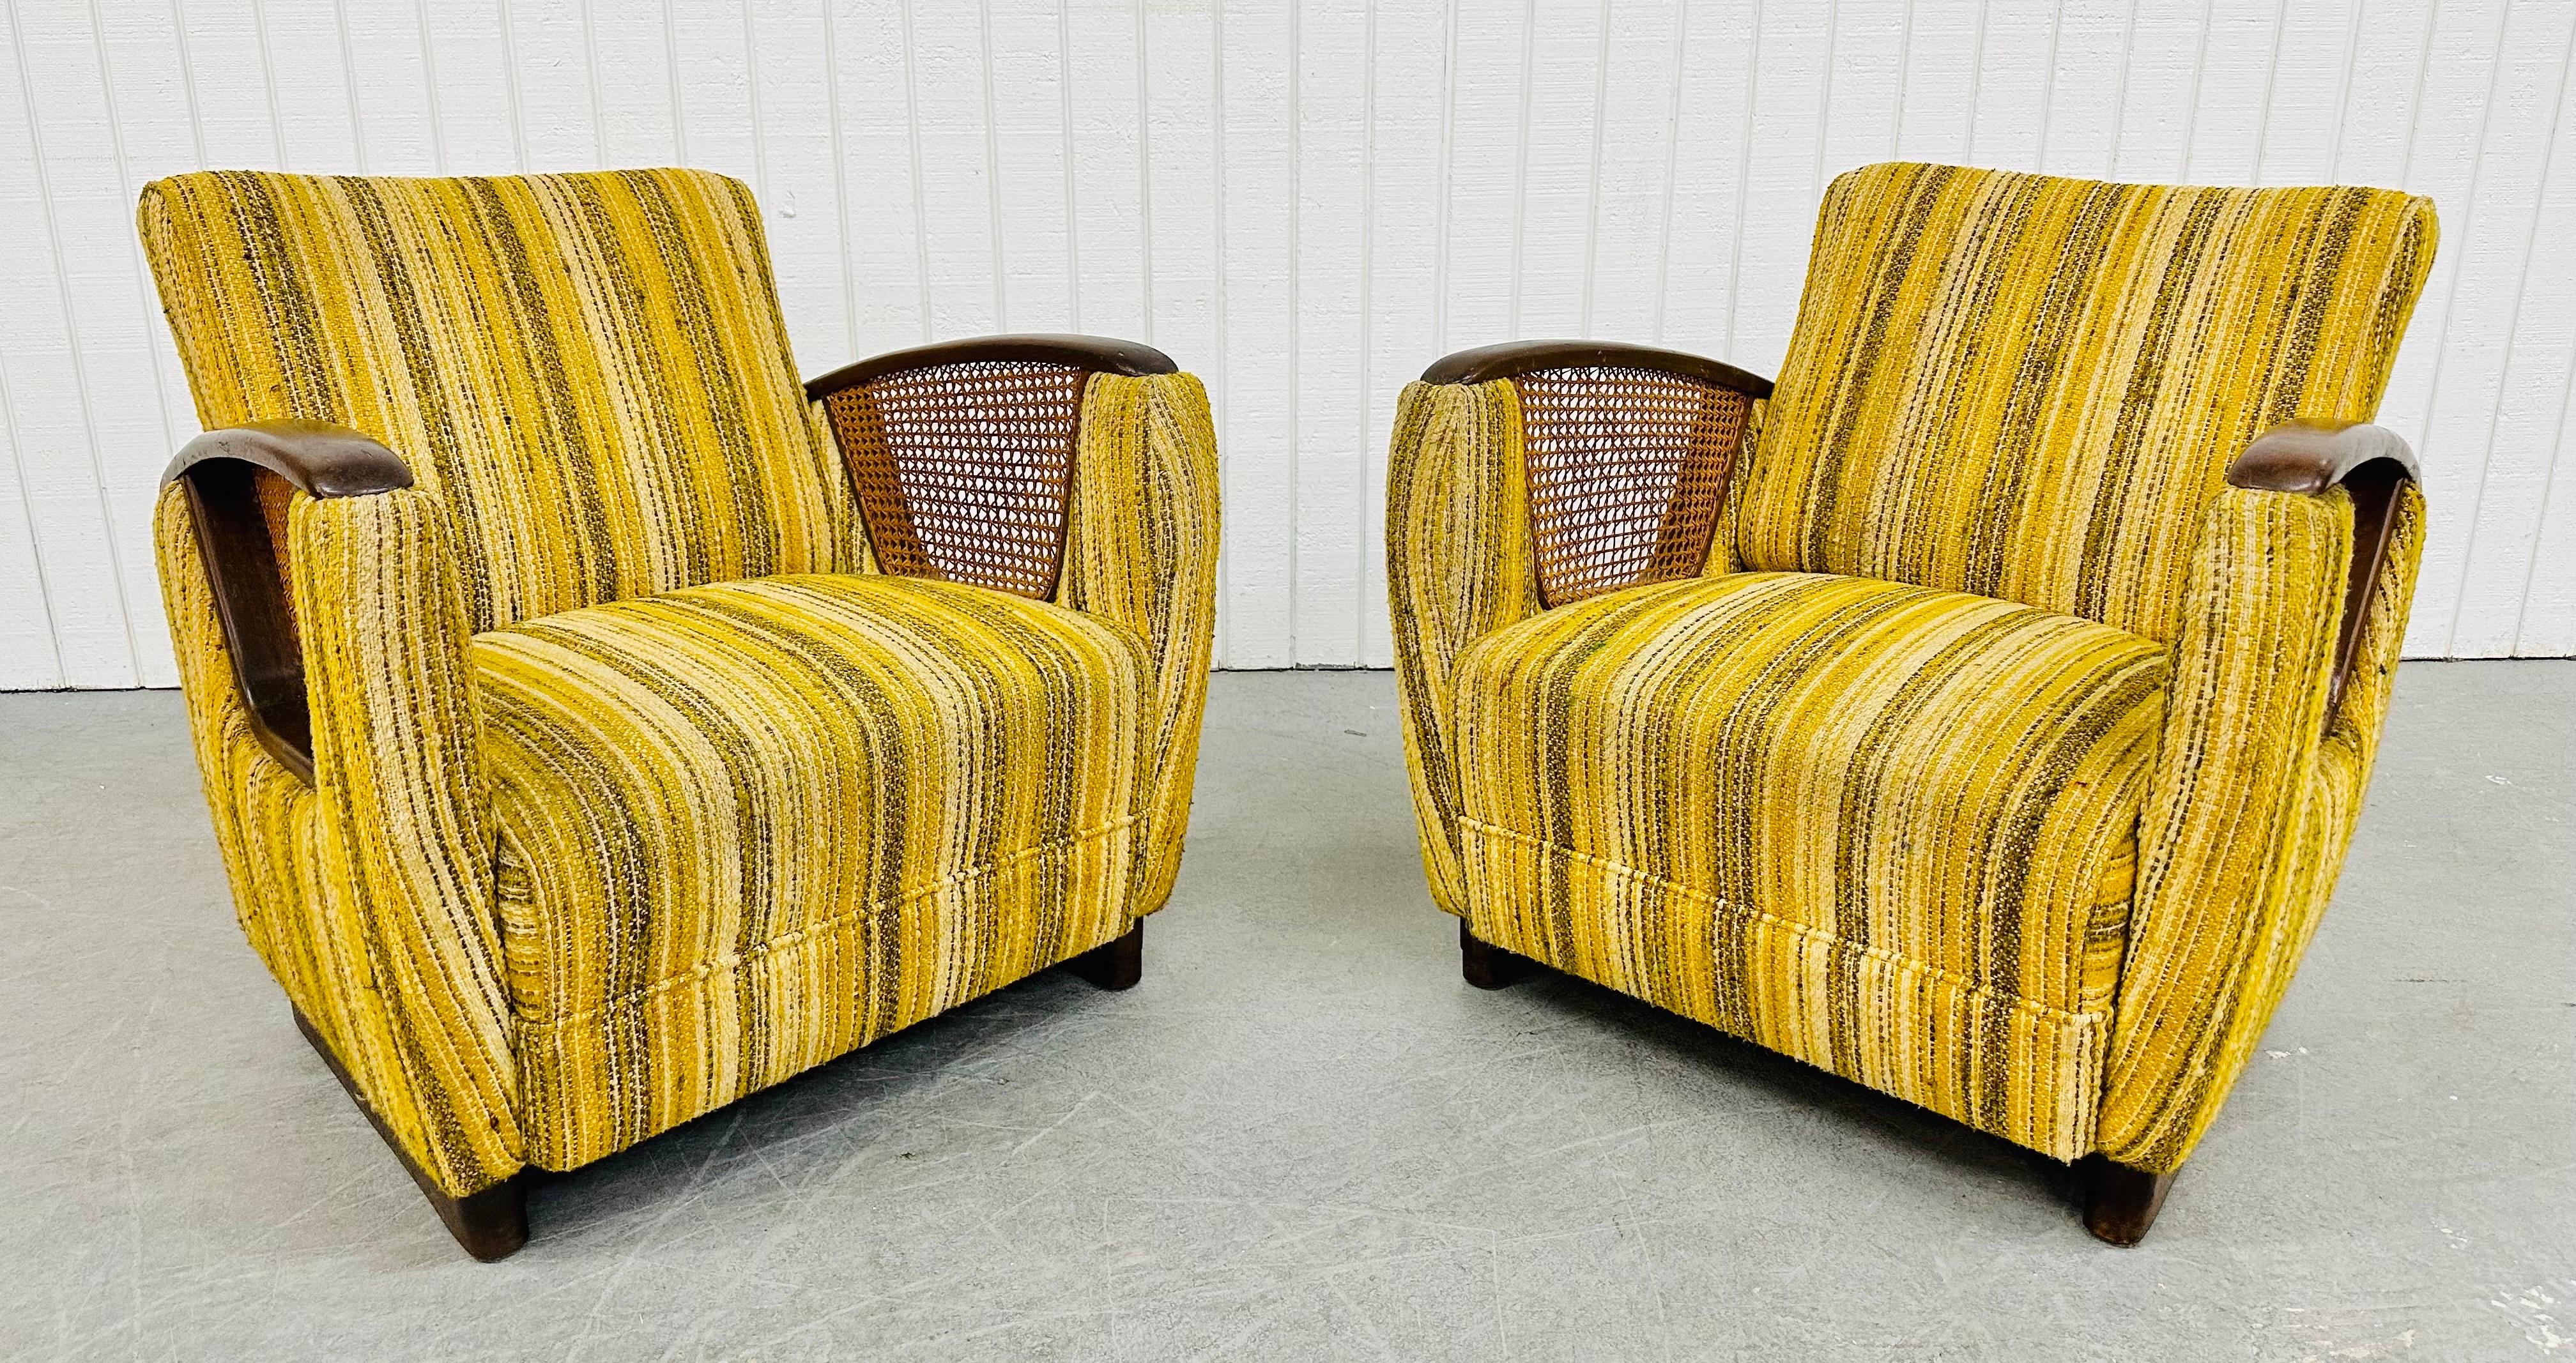 Cette annonce concerne une paire de fauteuils club de style déco moderne du milieu du siècle. Elle présente un design de style Art Déco, des bras arrondis avec des accoudoirs en bois, des côtés en rotin, une tapisserie d'origine à rayures jaunes et